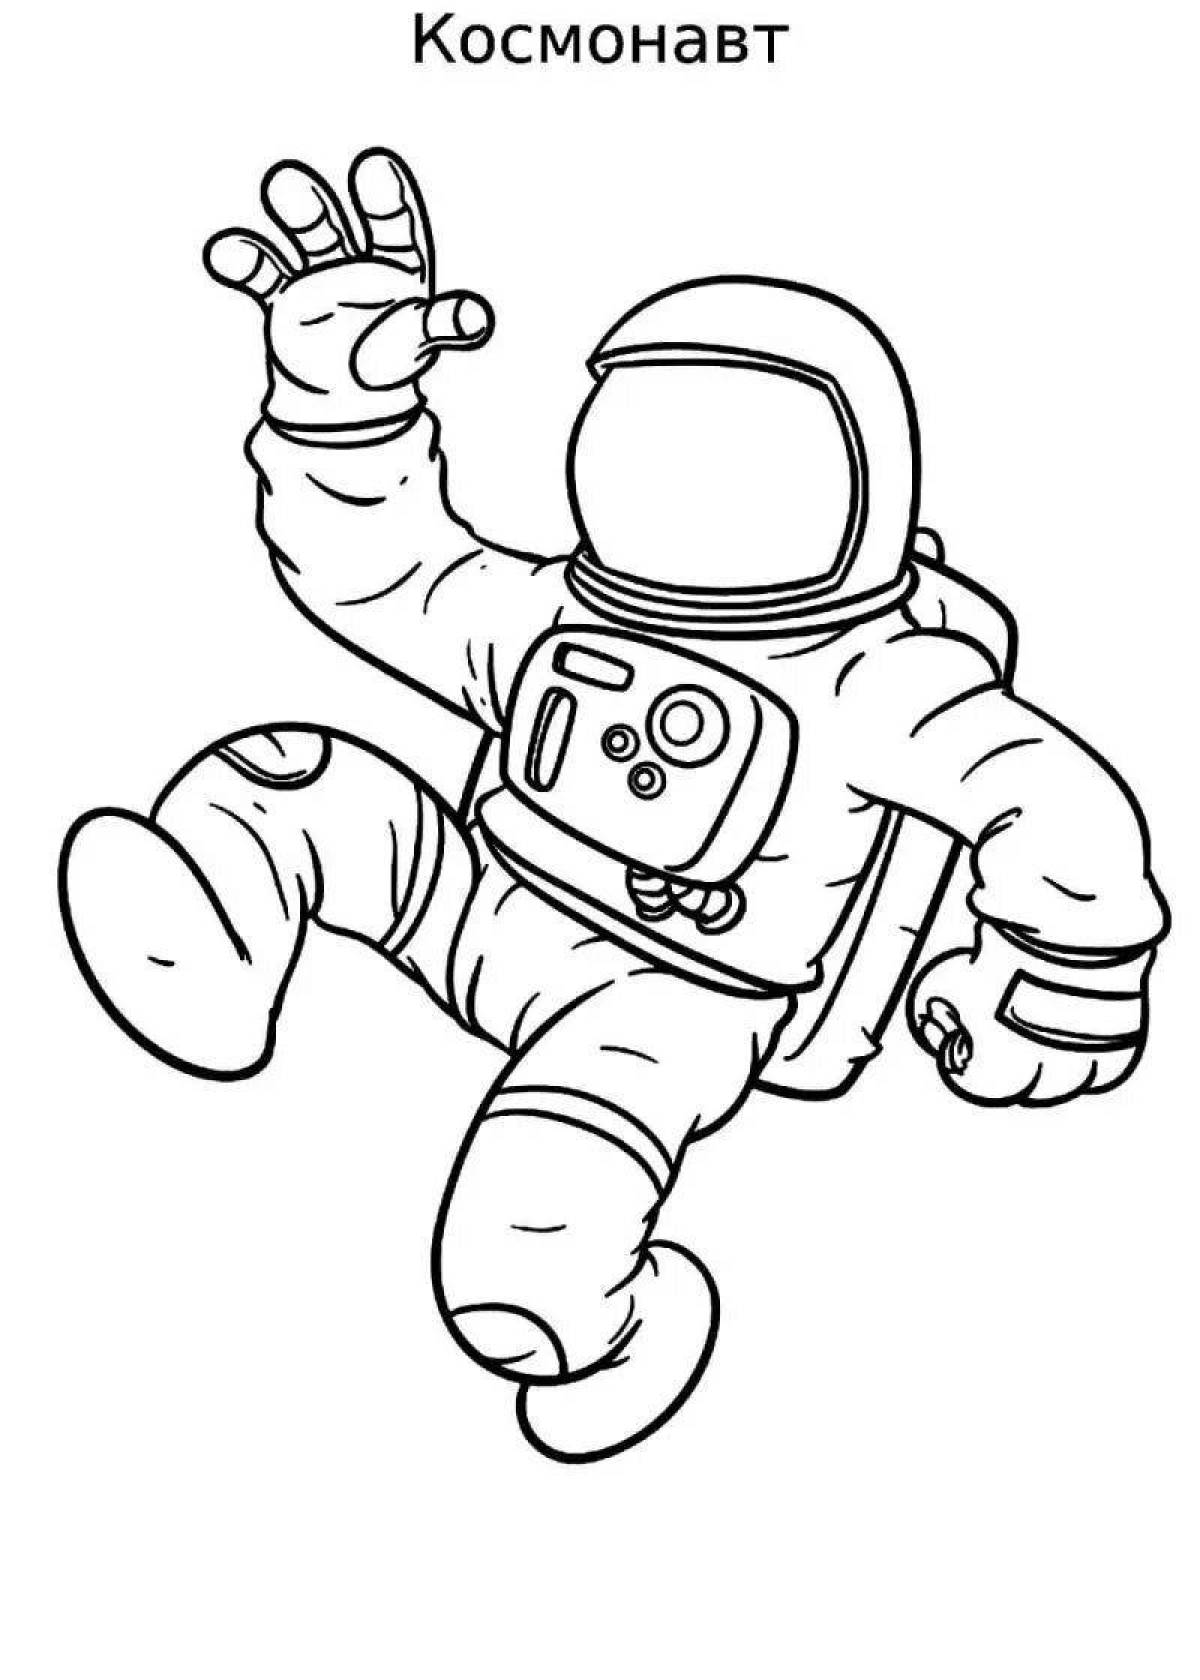 Как нарисовать скафандр. Раскраска космонавт в скафандре. Раскраска Космонавта в скафандре для детей. Космонавт раскраска для детей. Космонавт рисунок для детей.